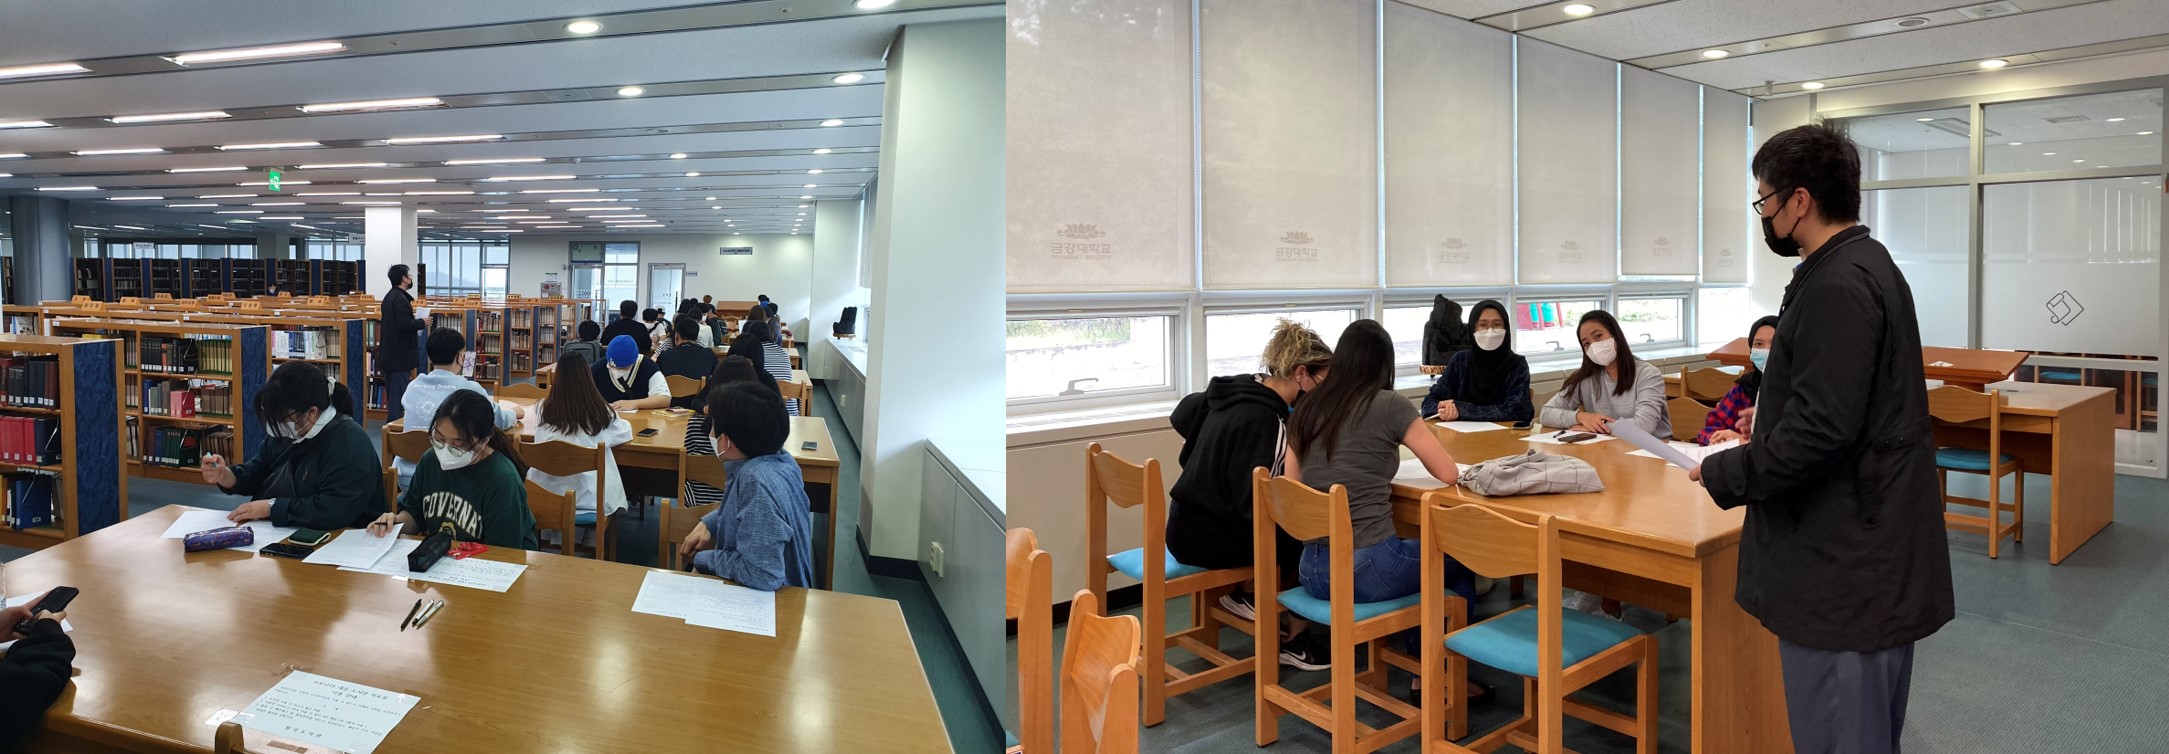 우리학교 도서관에서는 ㅇㅇㅇ을 준다! 원각도서관, 이용자 교육과 함께 간식 나눔 이벤트 진행